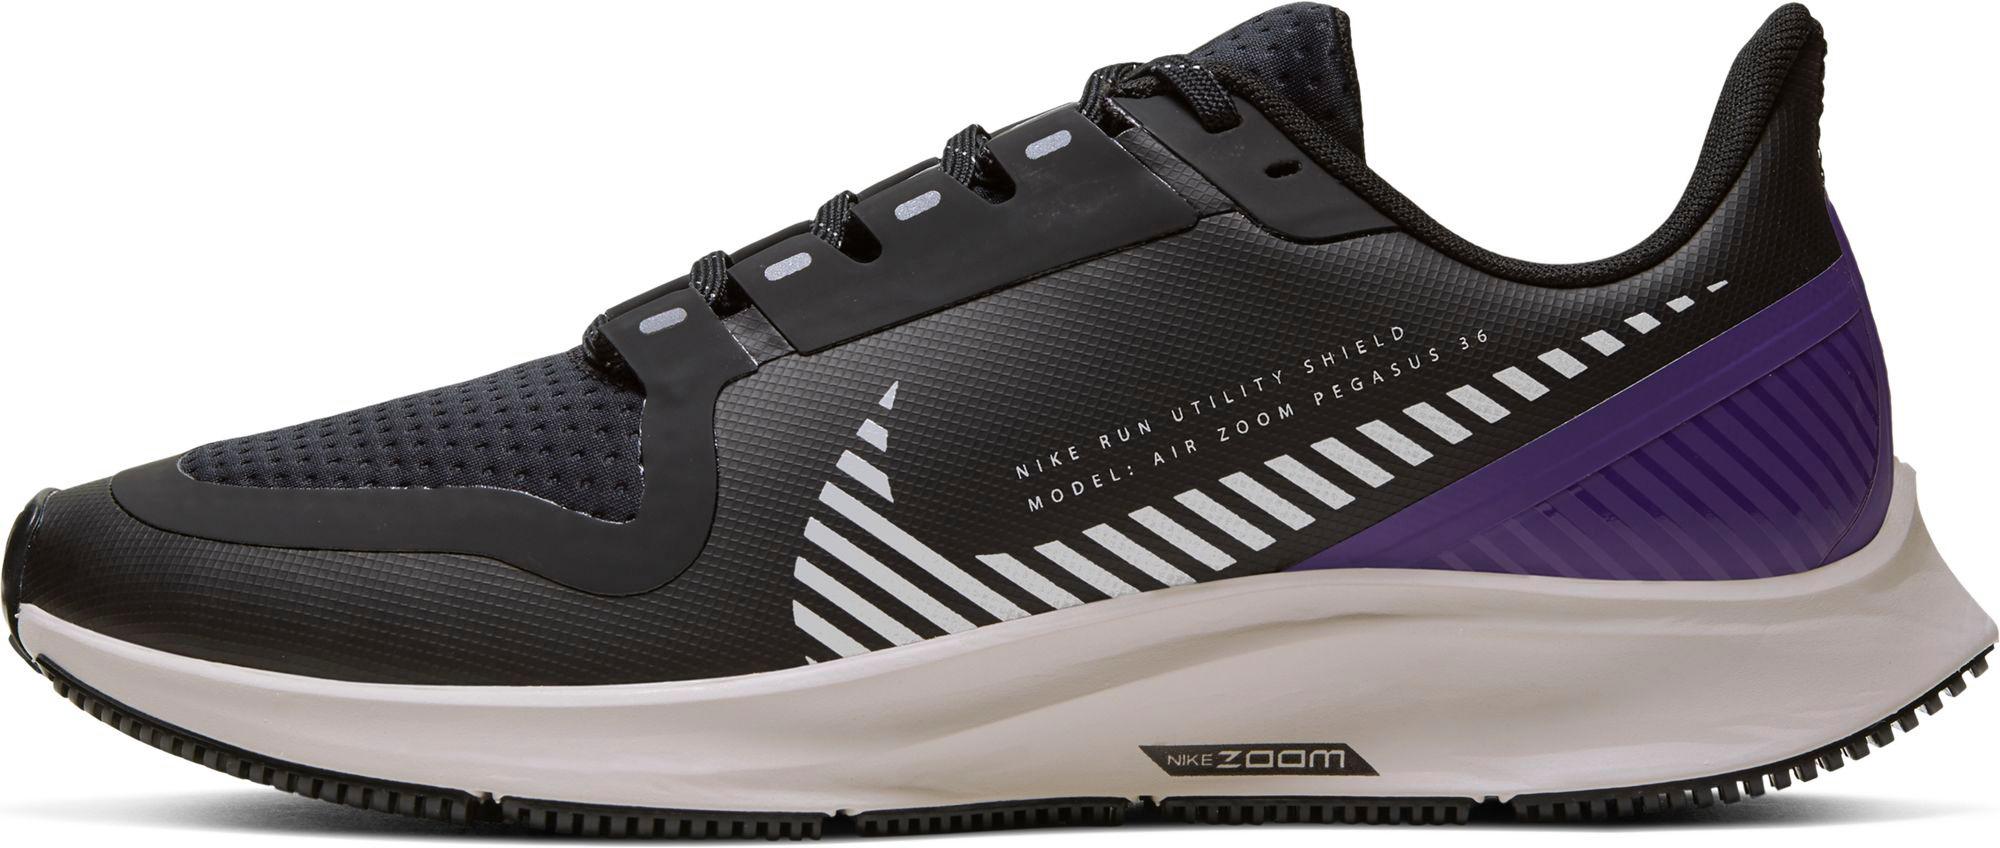 Nike Air Zoom Pegasus 36 Shield Laufschuhe Damen black-silver-desert  sand-voltage purple im Online Shop von SportScheck kaufen